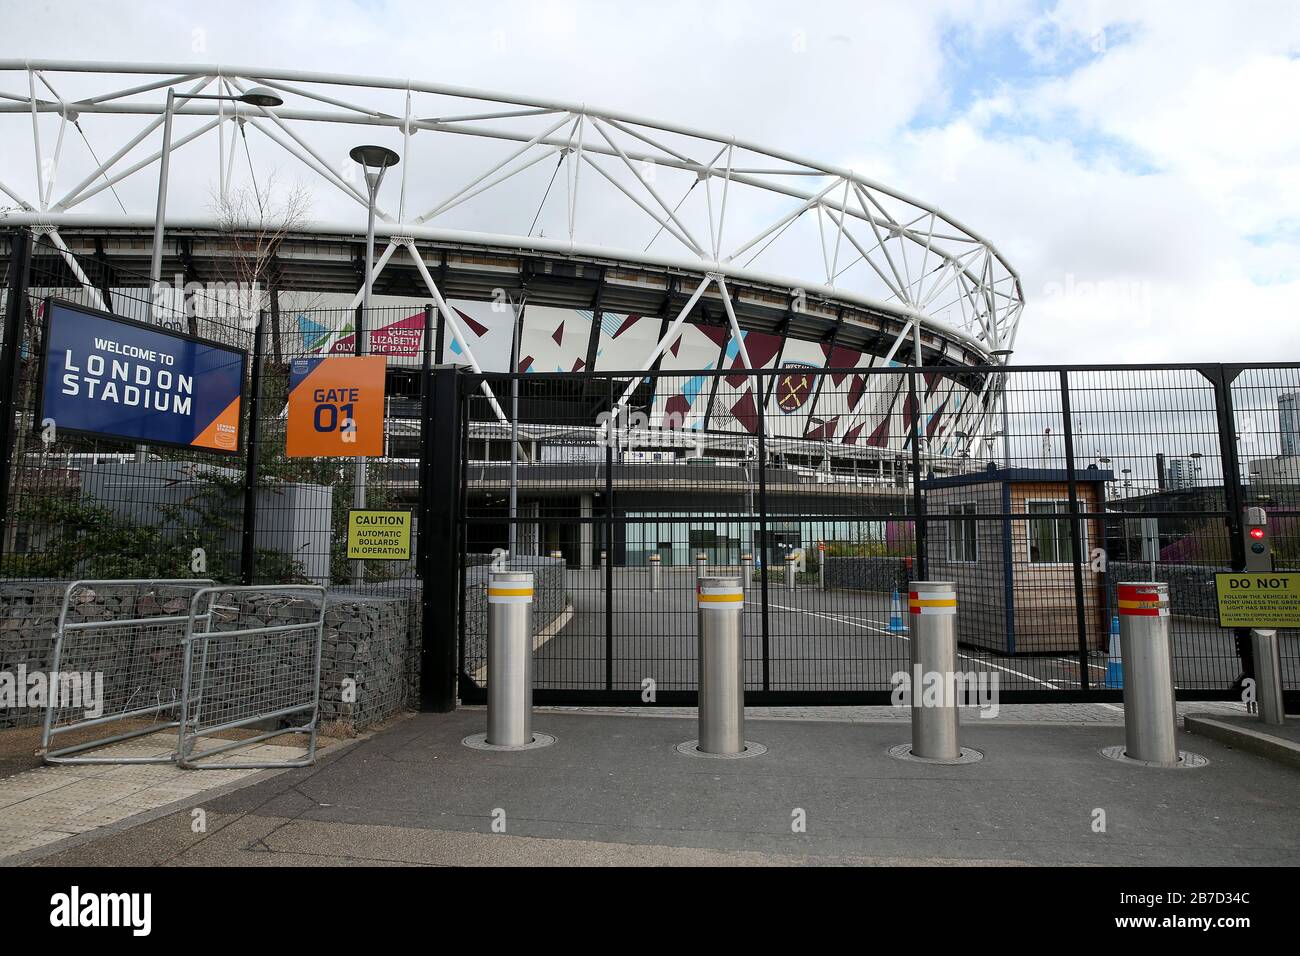 Blick auf gesperrte Tore außerhalb des Londoner Stadions, Heimstadion des West Ham United Football Club, nach der Ankündigung vom Freitag, dass die Premier League alle Spiele bis Samstag, den 4. April 2020 ausgesetzt hat. Stockfoto